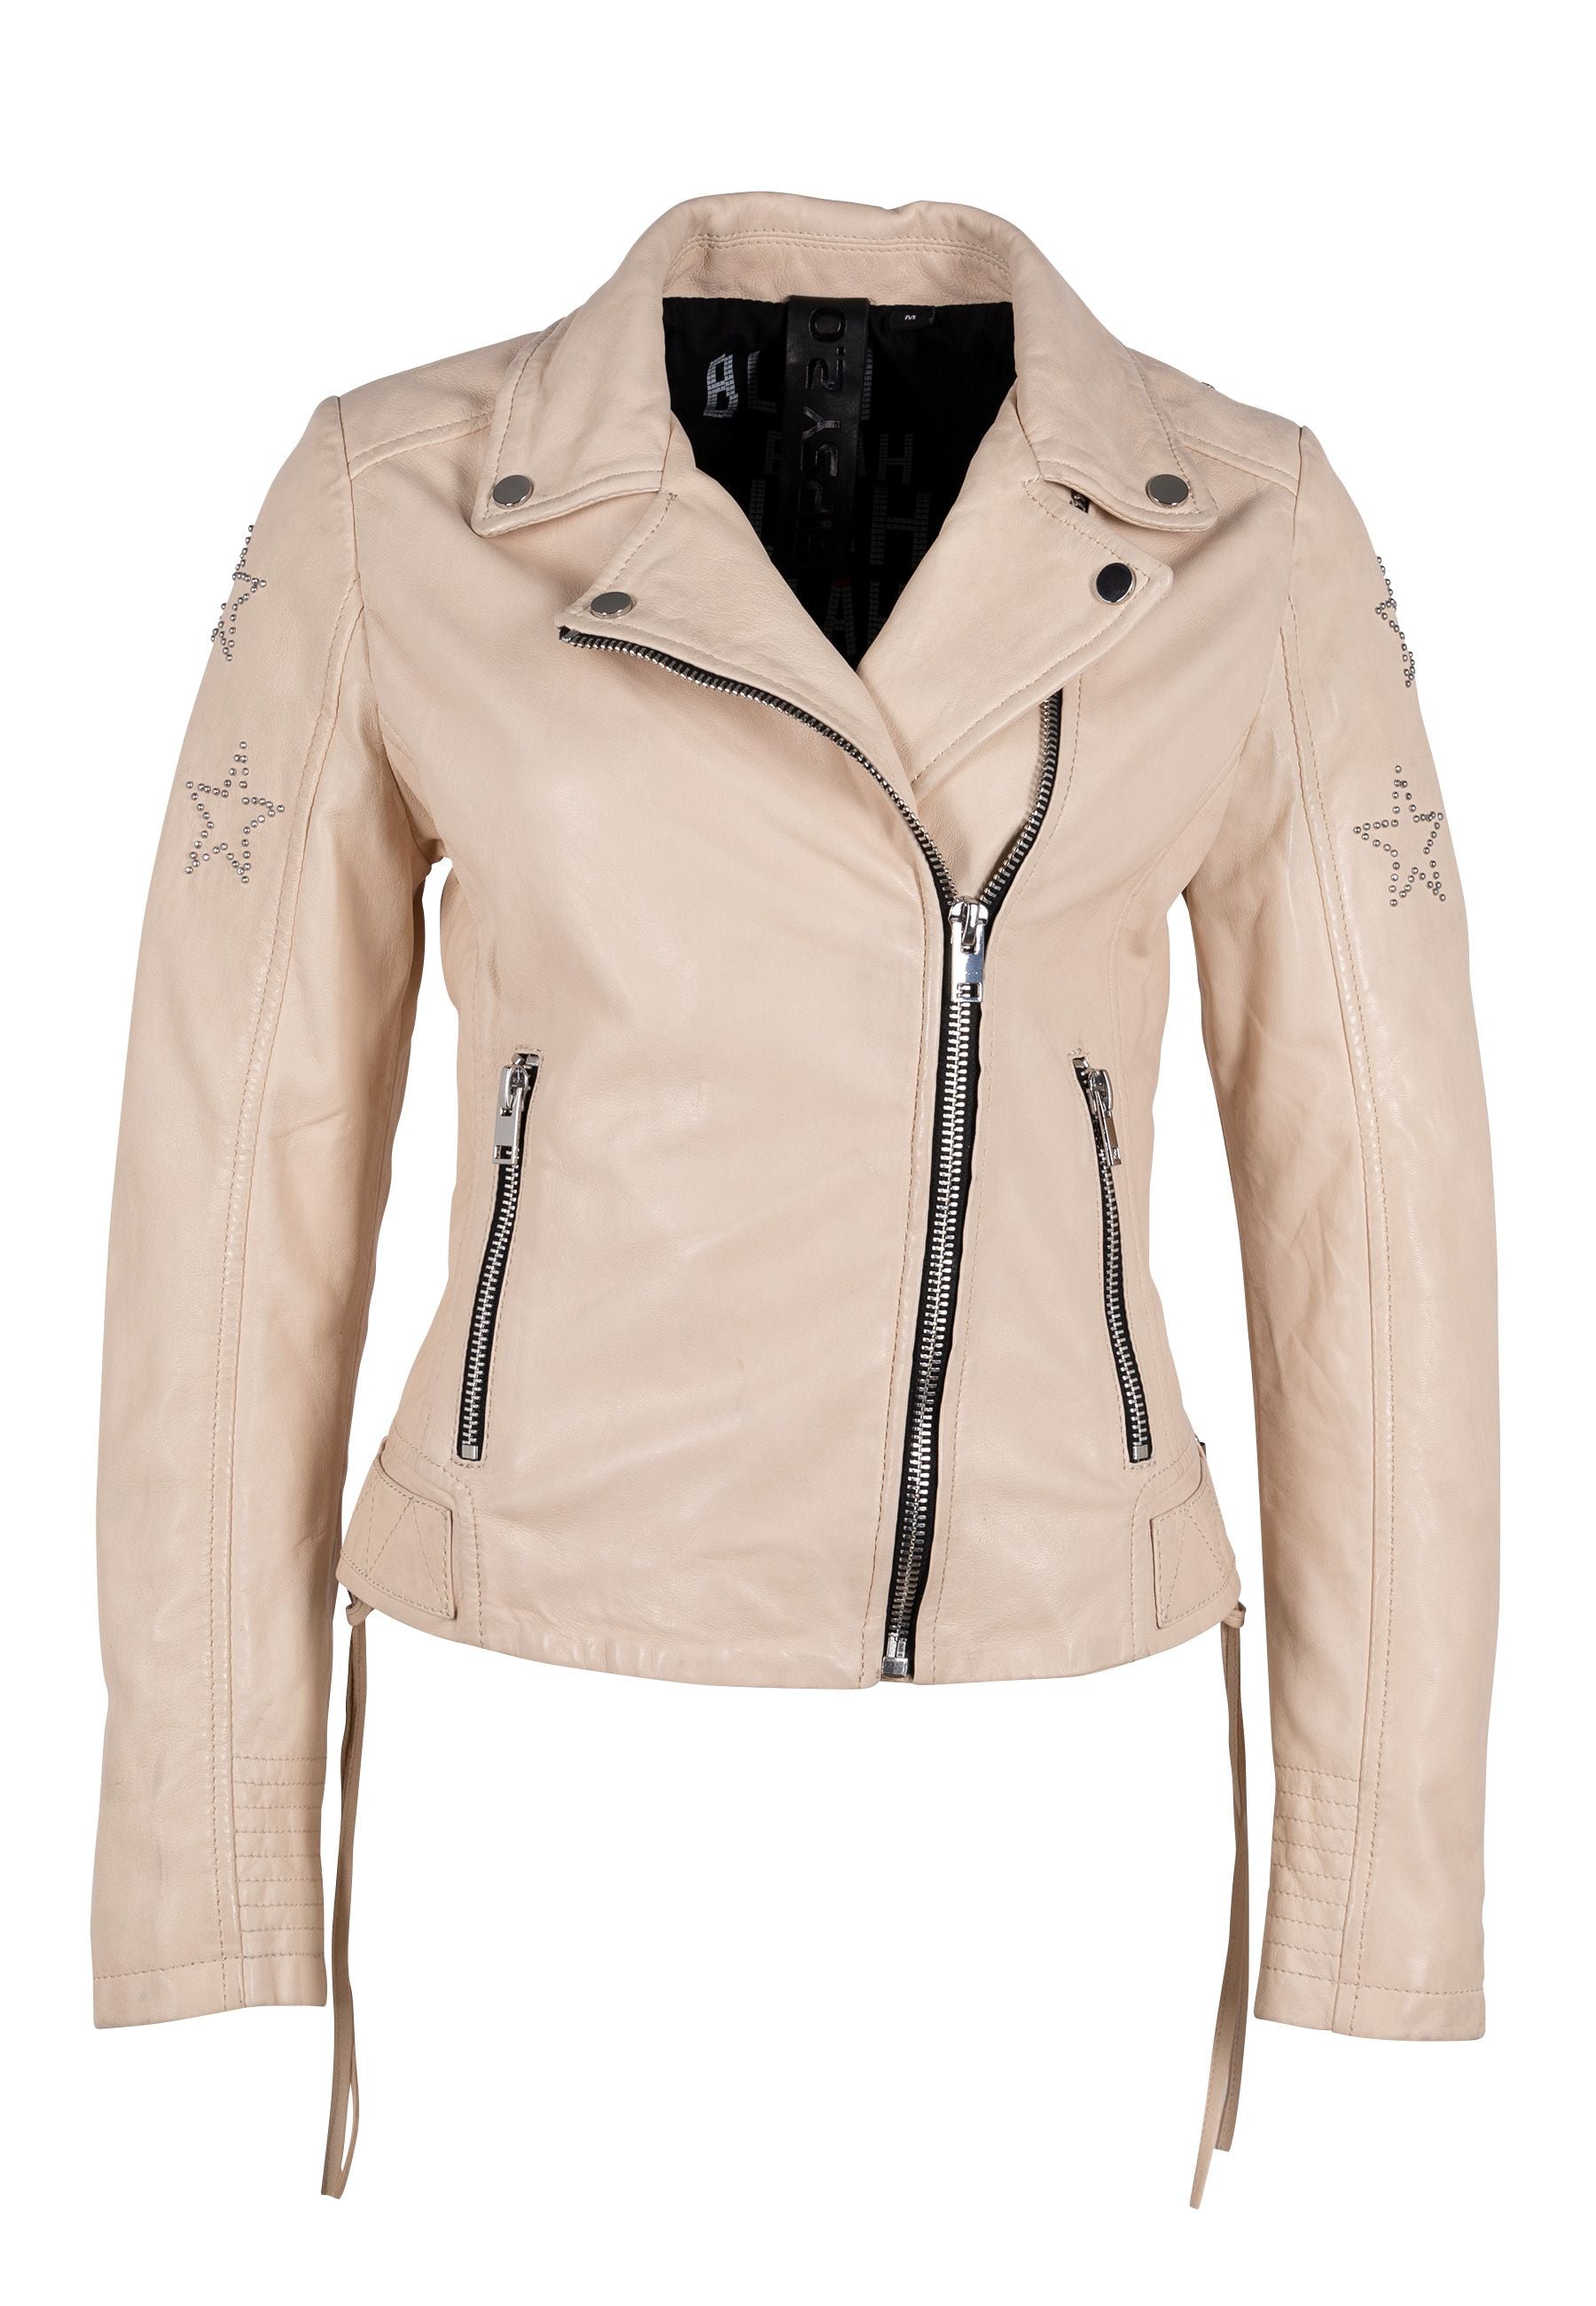 Wana Leather Jacket, White, Fit mauritiusleather – Slim